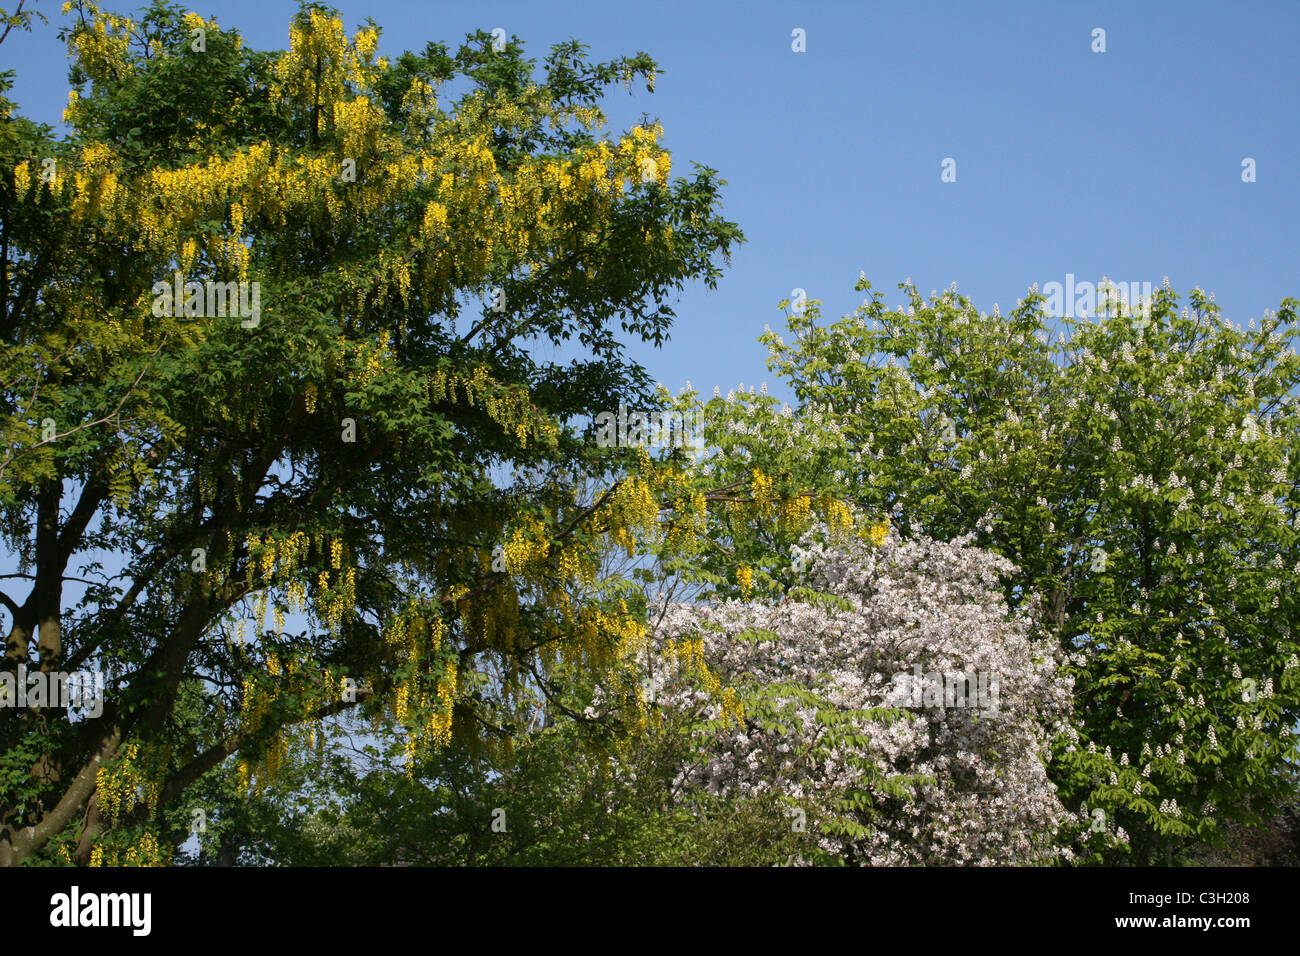 Blühende Bäume und Sträucher - Goldregen, Weißdorn und Rosskastanie Stockfoto